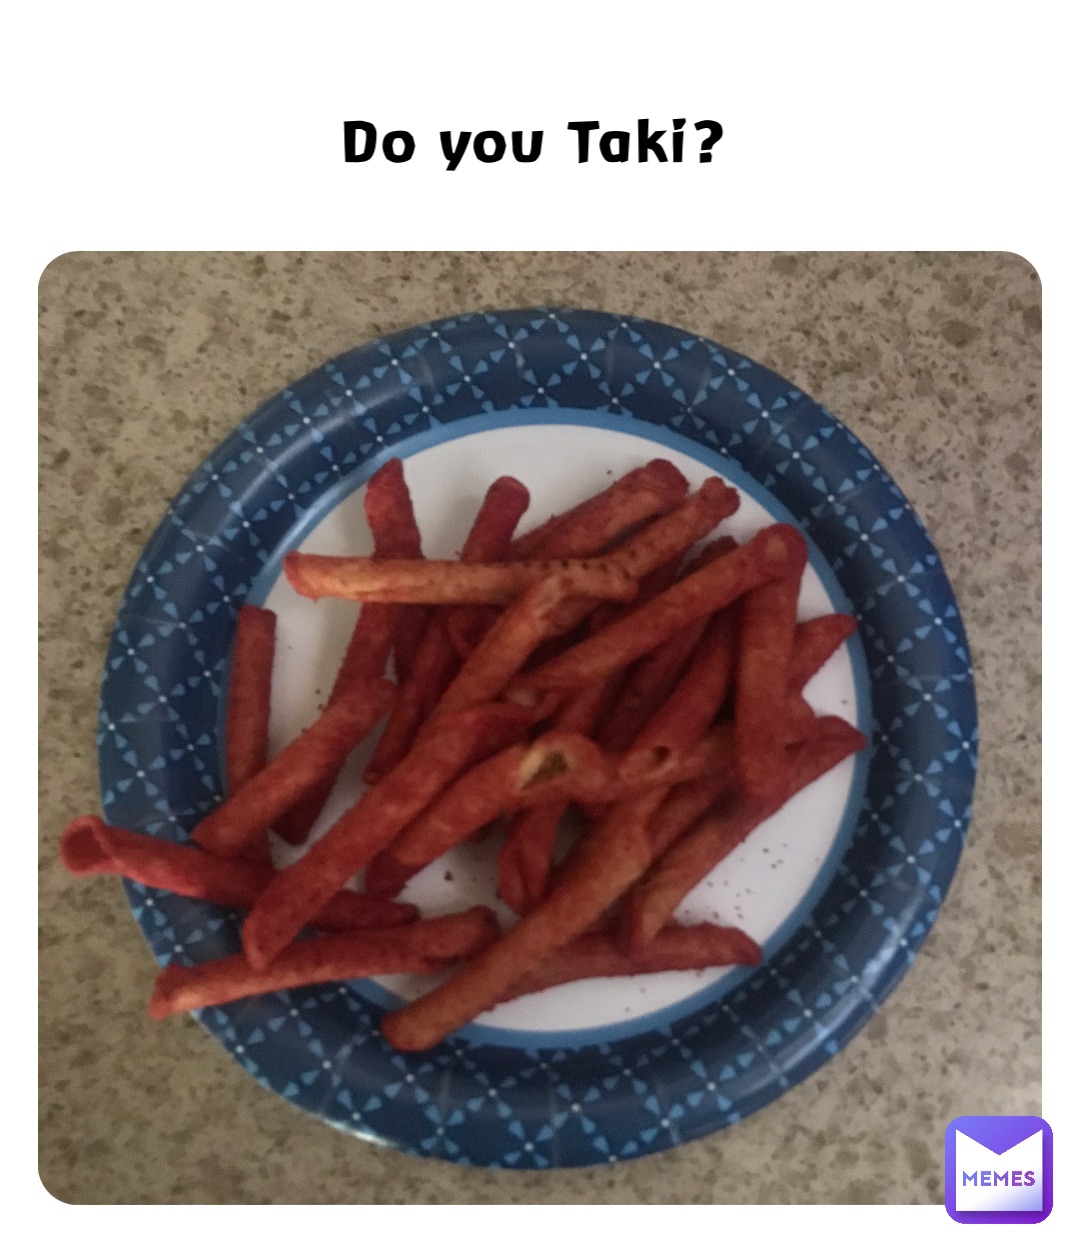 Do you Taki?